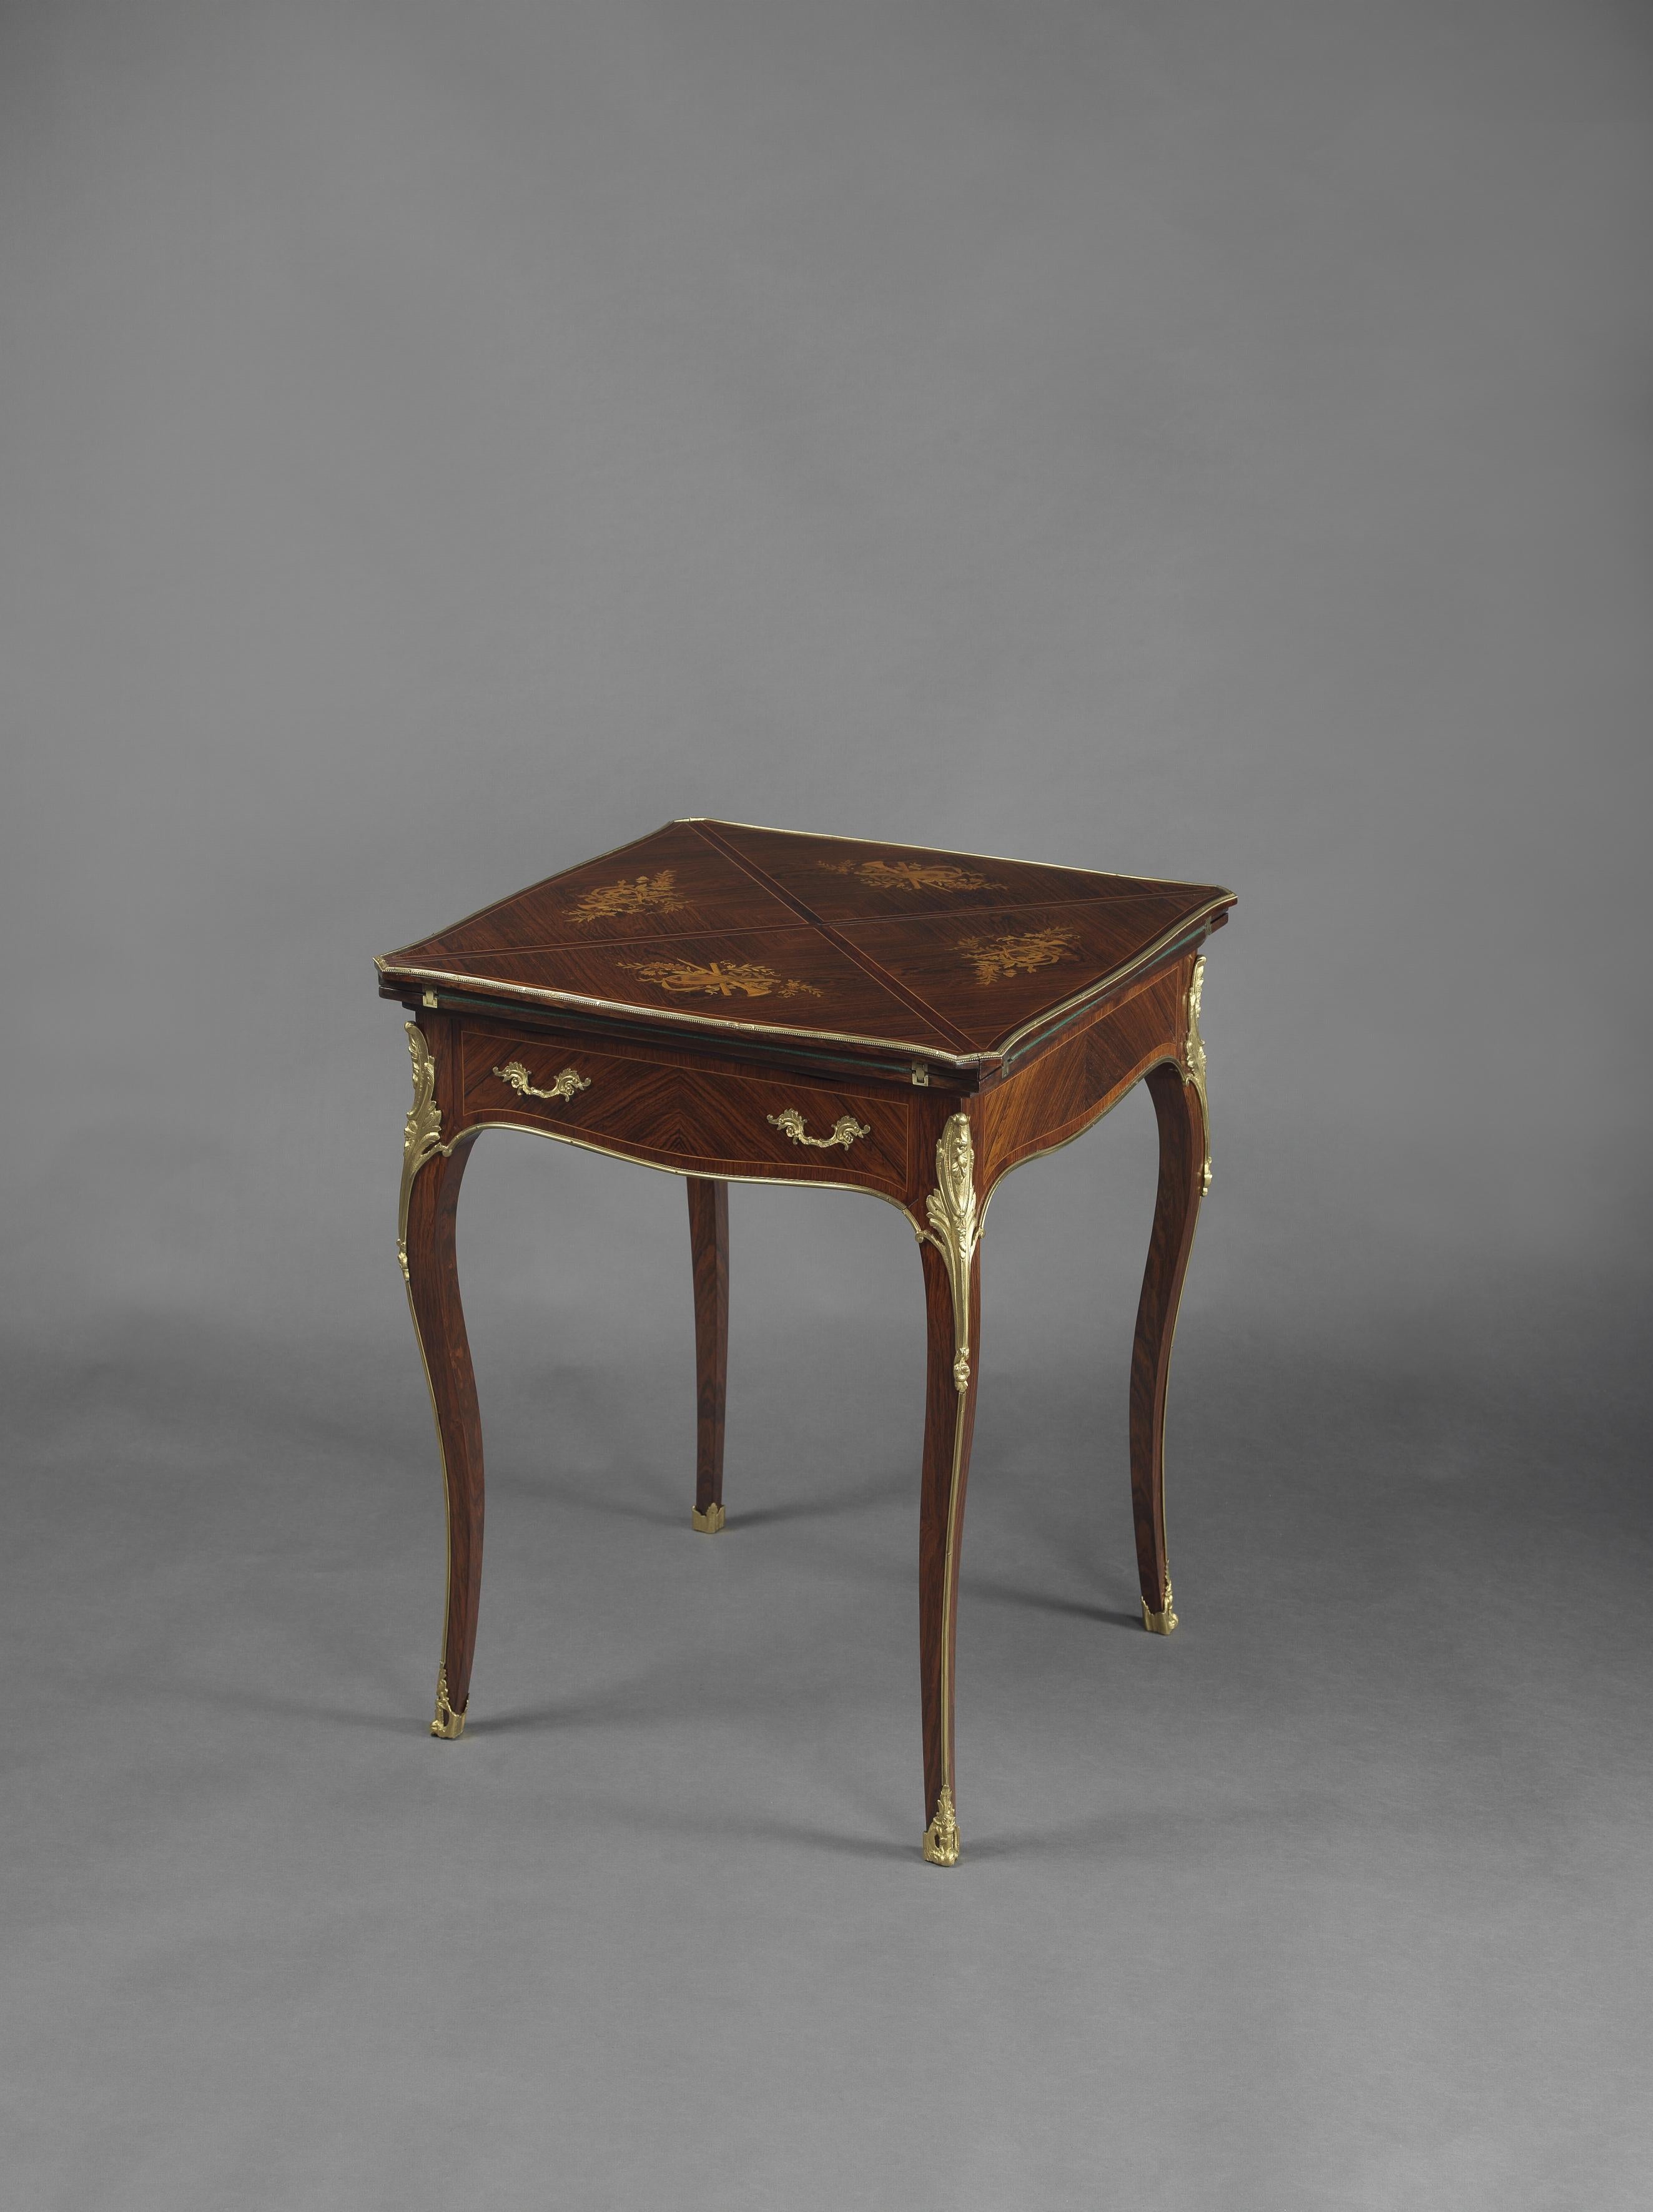 Table à enveloppe de style Louis XV en marqueterie et bronze doré.

Français, datant d'environ 1890. 

Cette belle table à cartes est dotée d'un plateau pivotant, de quatre panneaux 